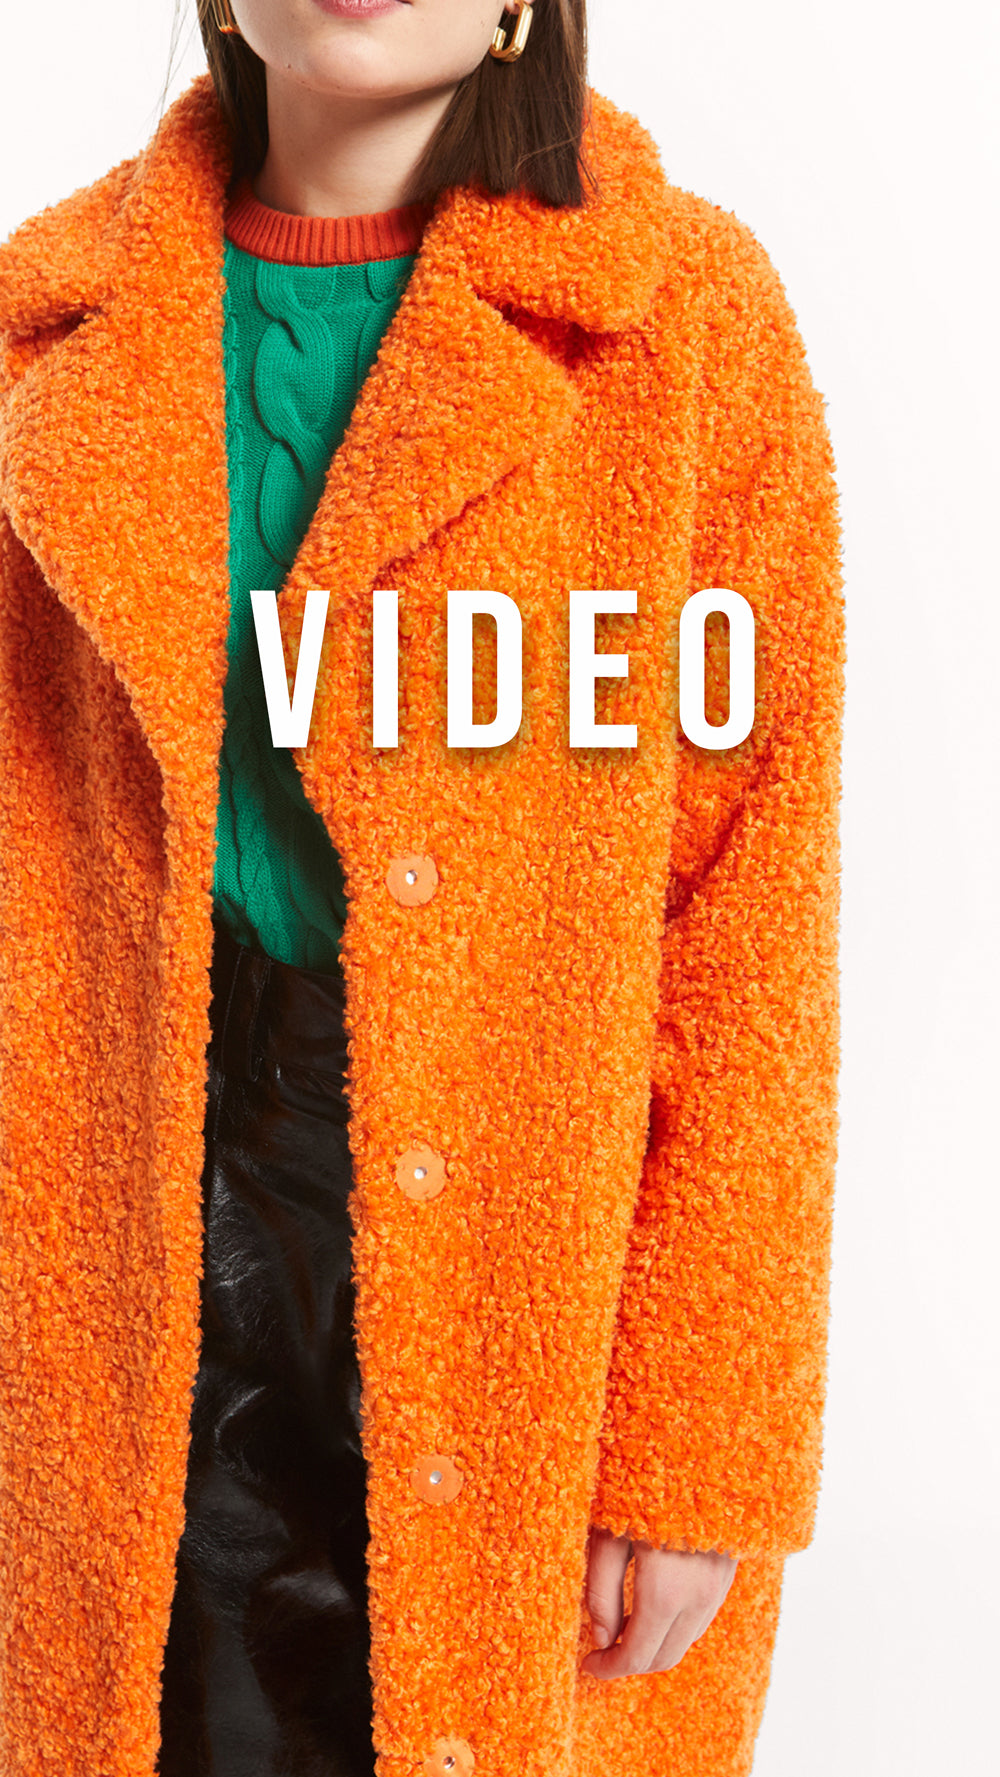 mioh | SOUND ORANGE - Abrigo teddy naranja faux fur. Descubre los abrigos de pelo sintético de MIOH para esta campaña Otoño Invierno 2022. Abrigan muchísimo, como los mejores abrigos de plumas. Este pelo es súper agradable y cómodo y da una imagen totalmente natural. Tienes que probártelos!